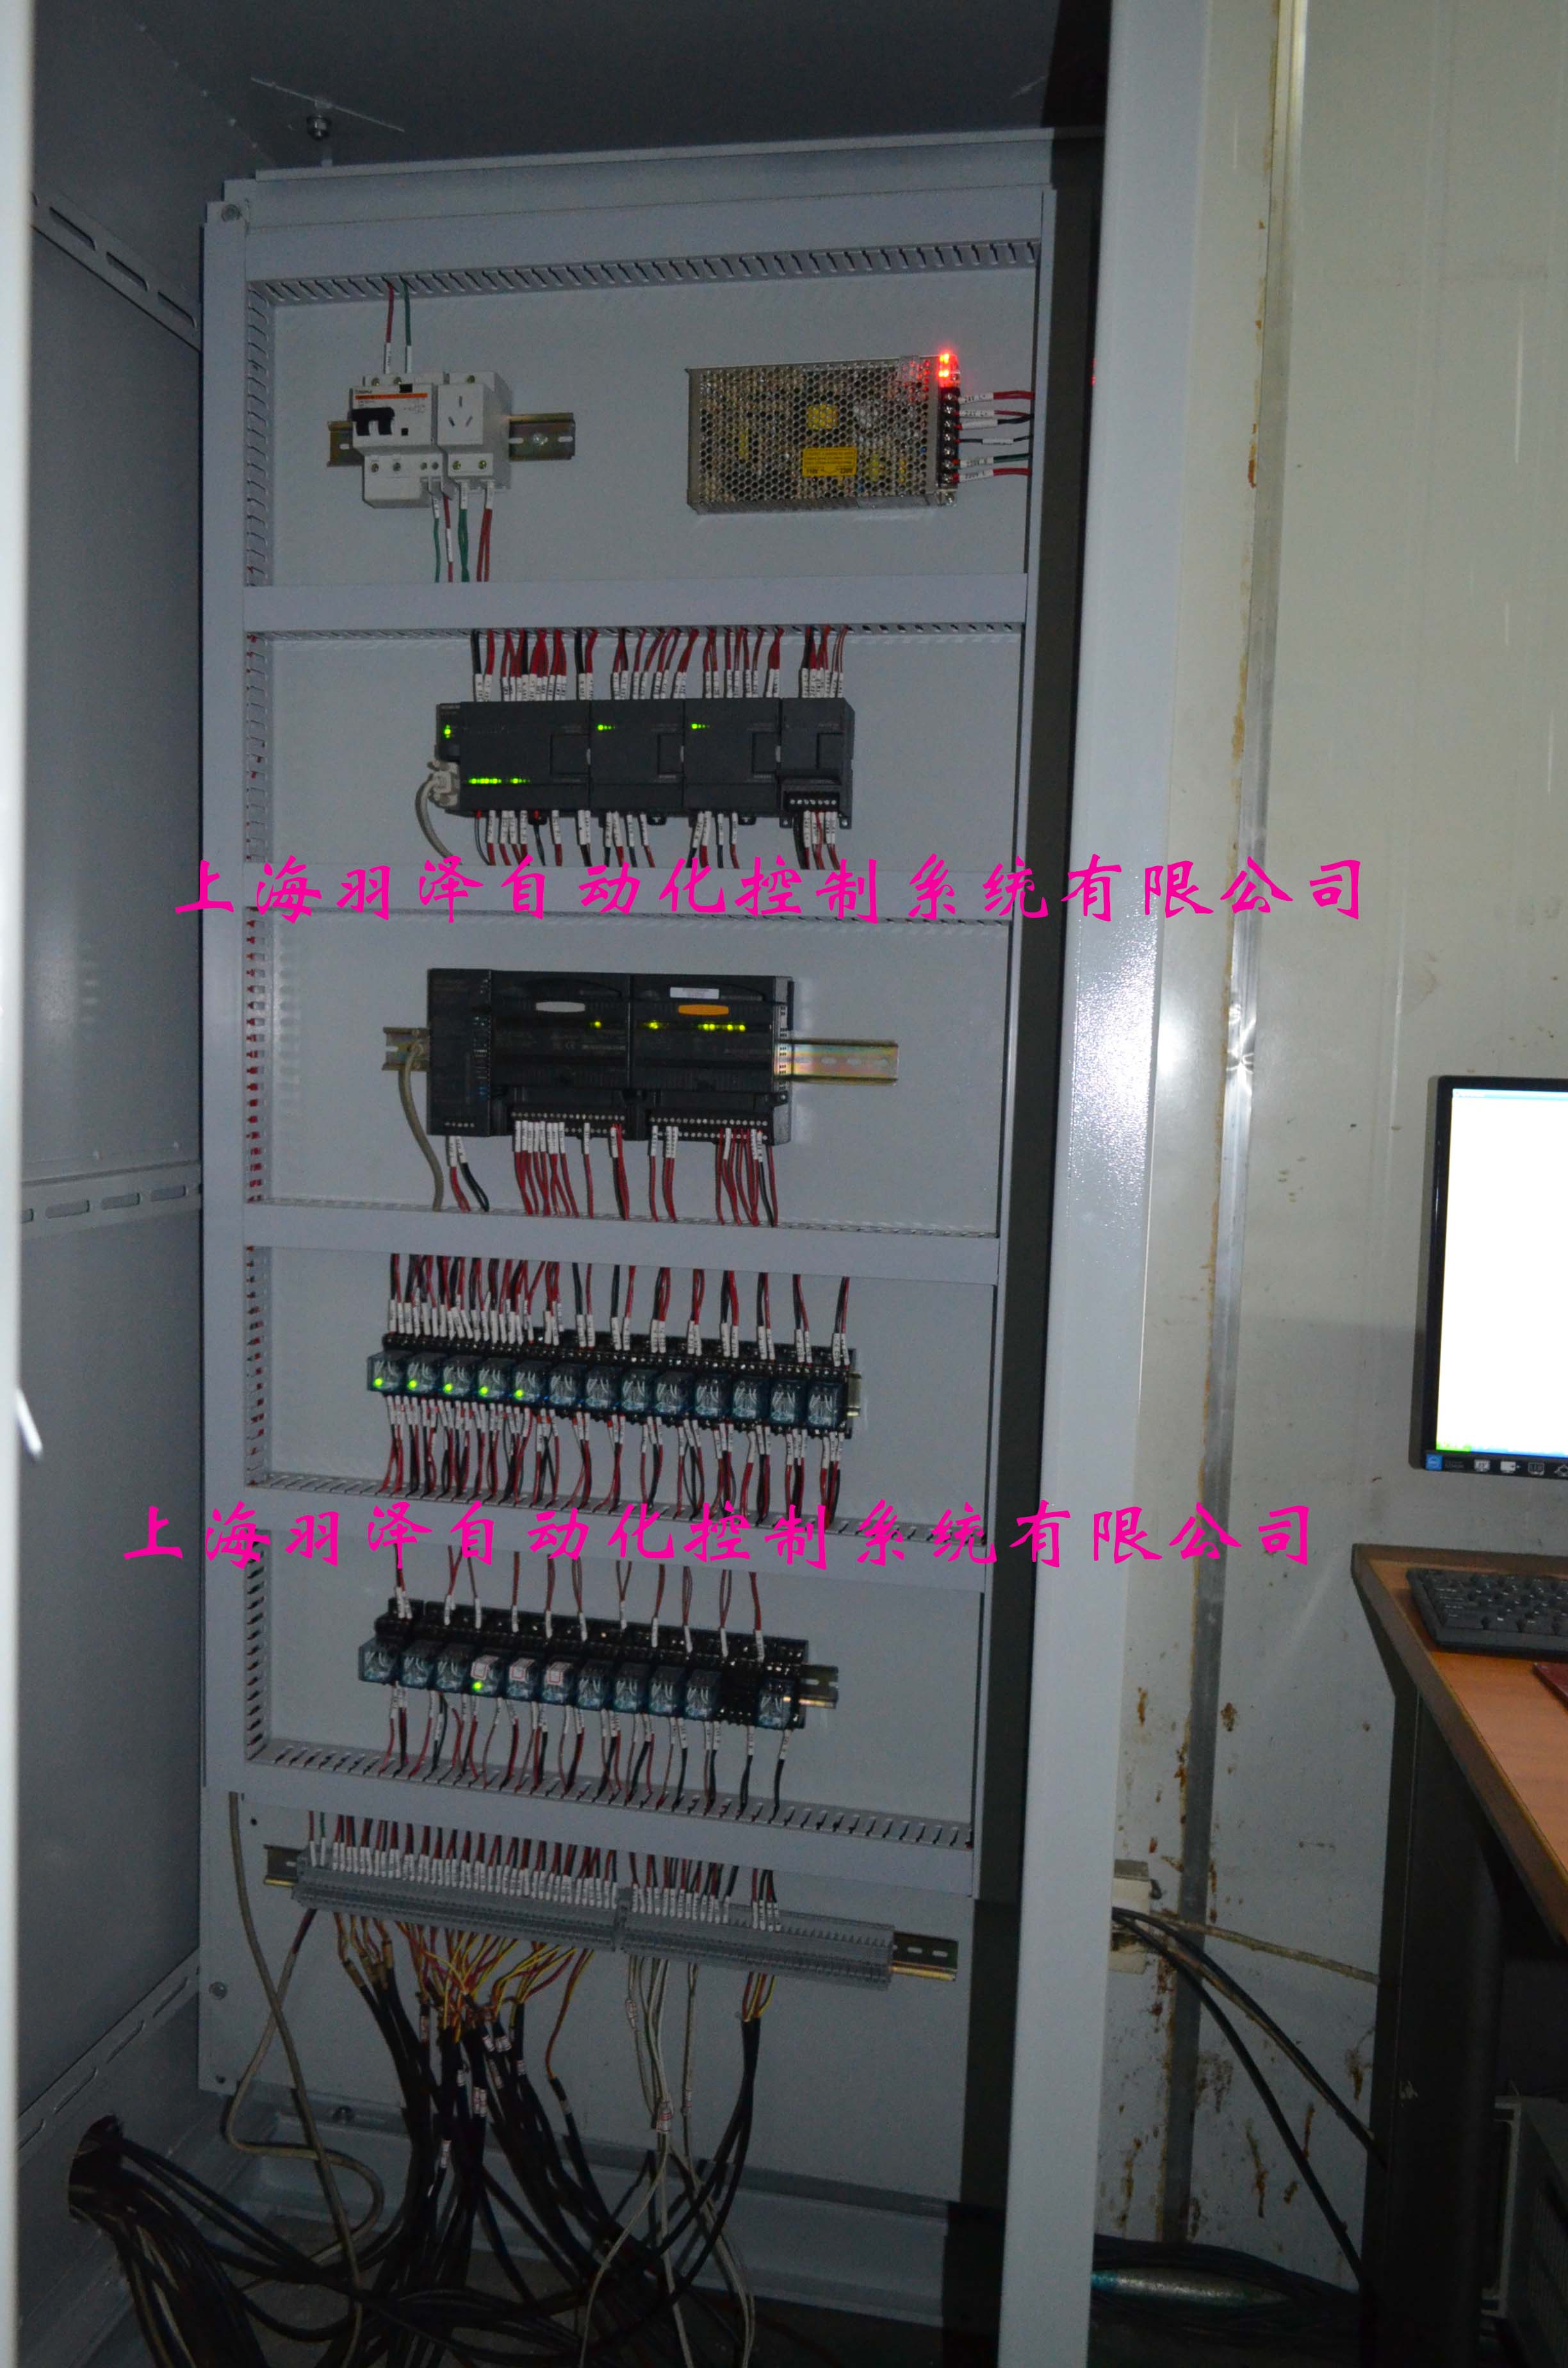 上海羽泽专业做小型DCS控制系统,小型PLC控制系统.自动化过程控制系统.自动化成套设备